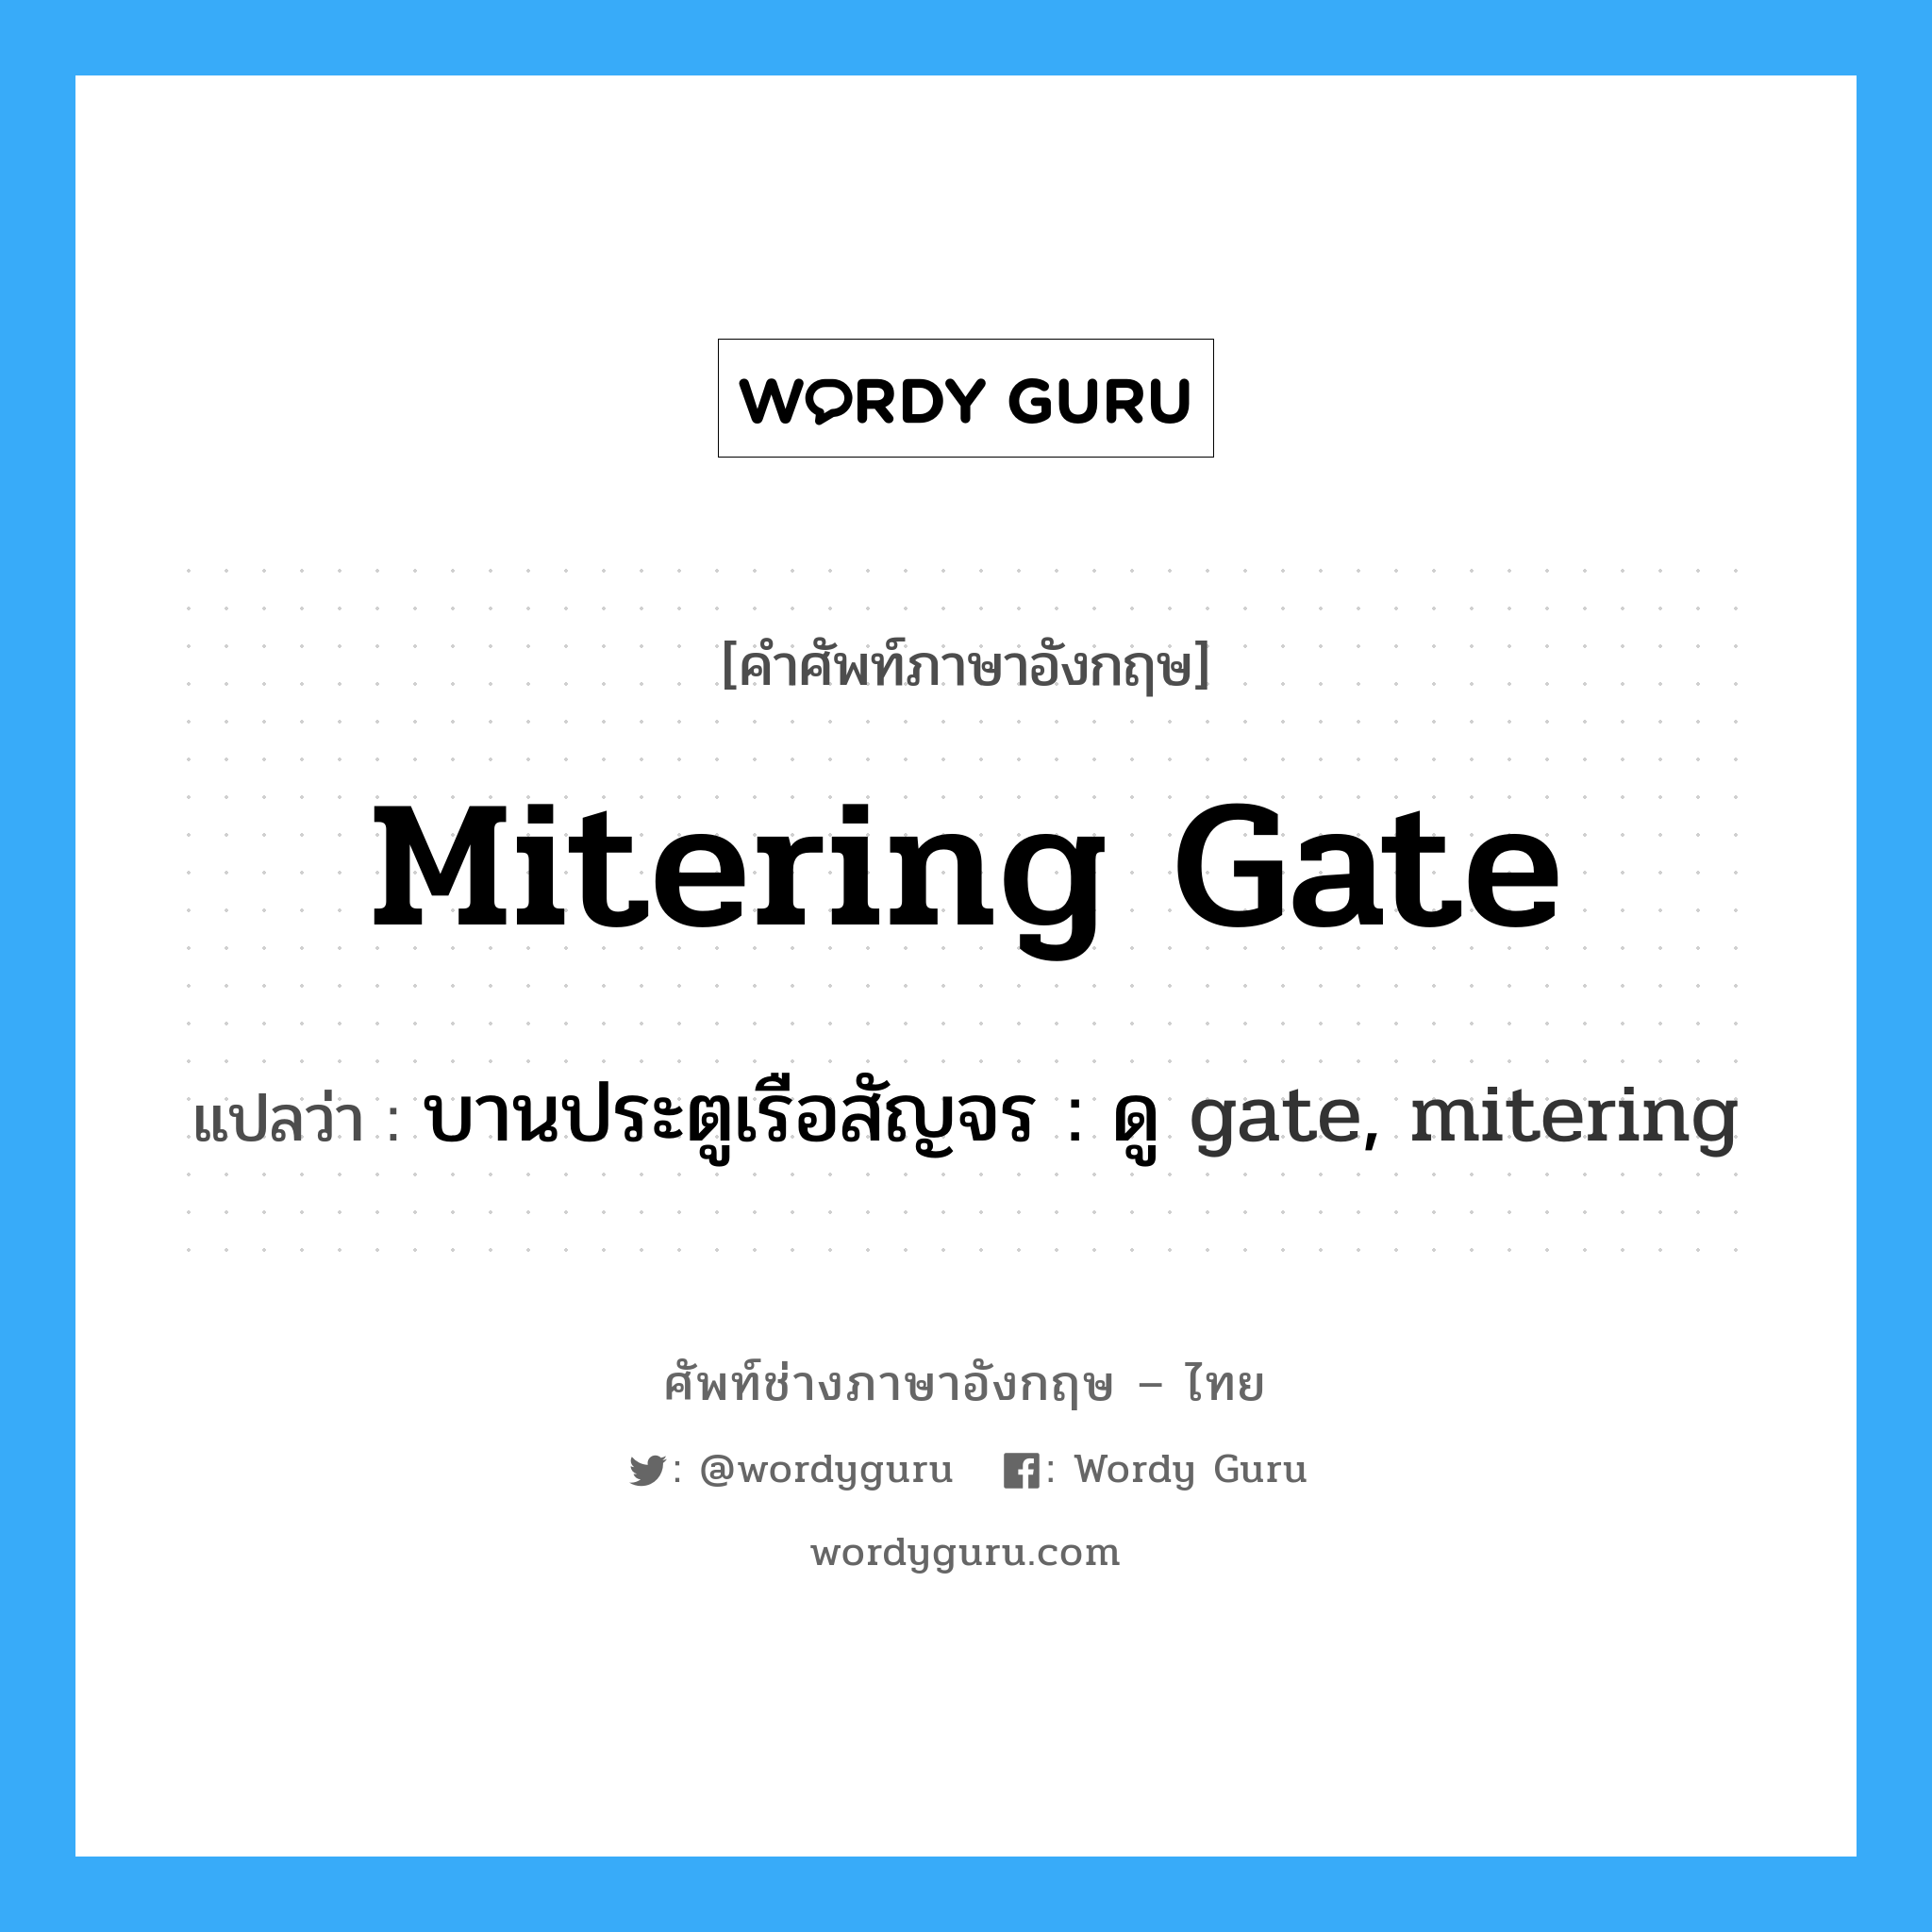 บานประตูเรือสัญจร : ดู gate, mitering ภาษาอังกฤษ?, คำศัพท์ช่างภาษาอังกฤษ - ไทย บานประตูเรือสัญจร : ดู gate, mitering คำศัพท์ภาษาอังกฤษ บานประตูเรือสัญจร : ดู gate, mitering แปลว่า mitering gate